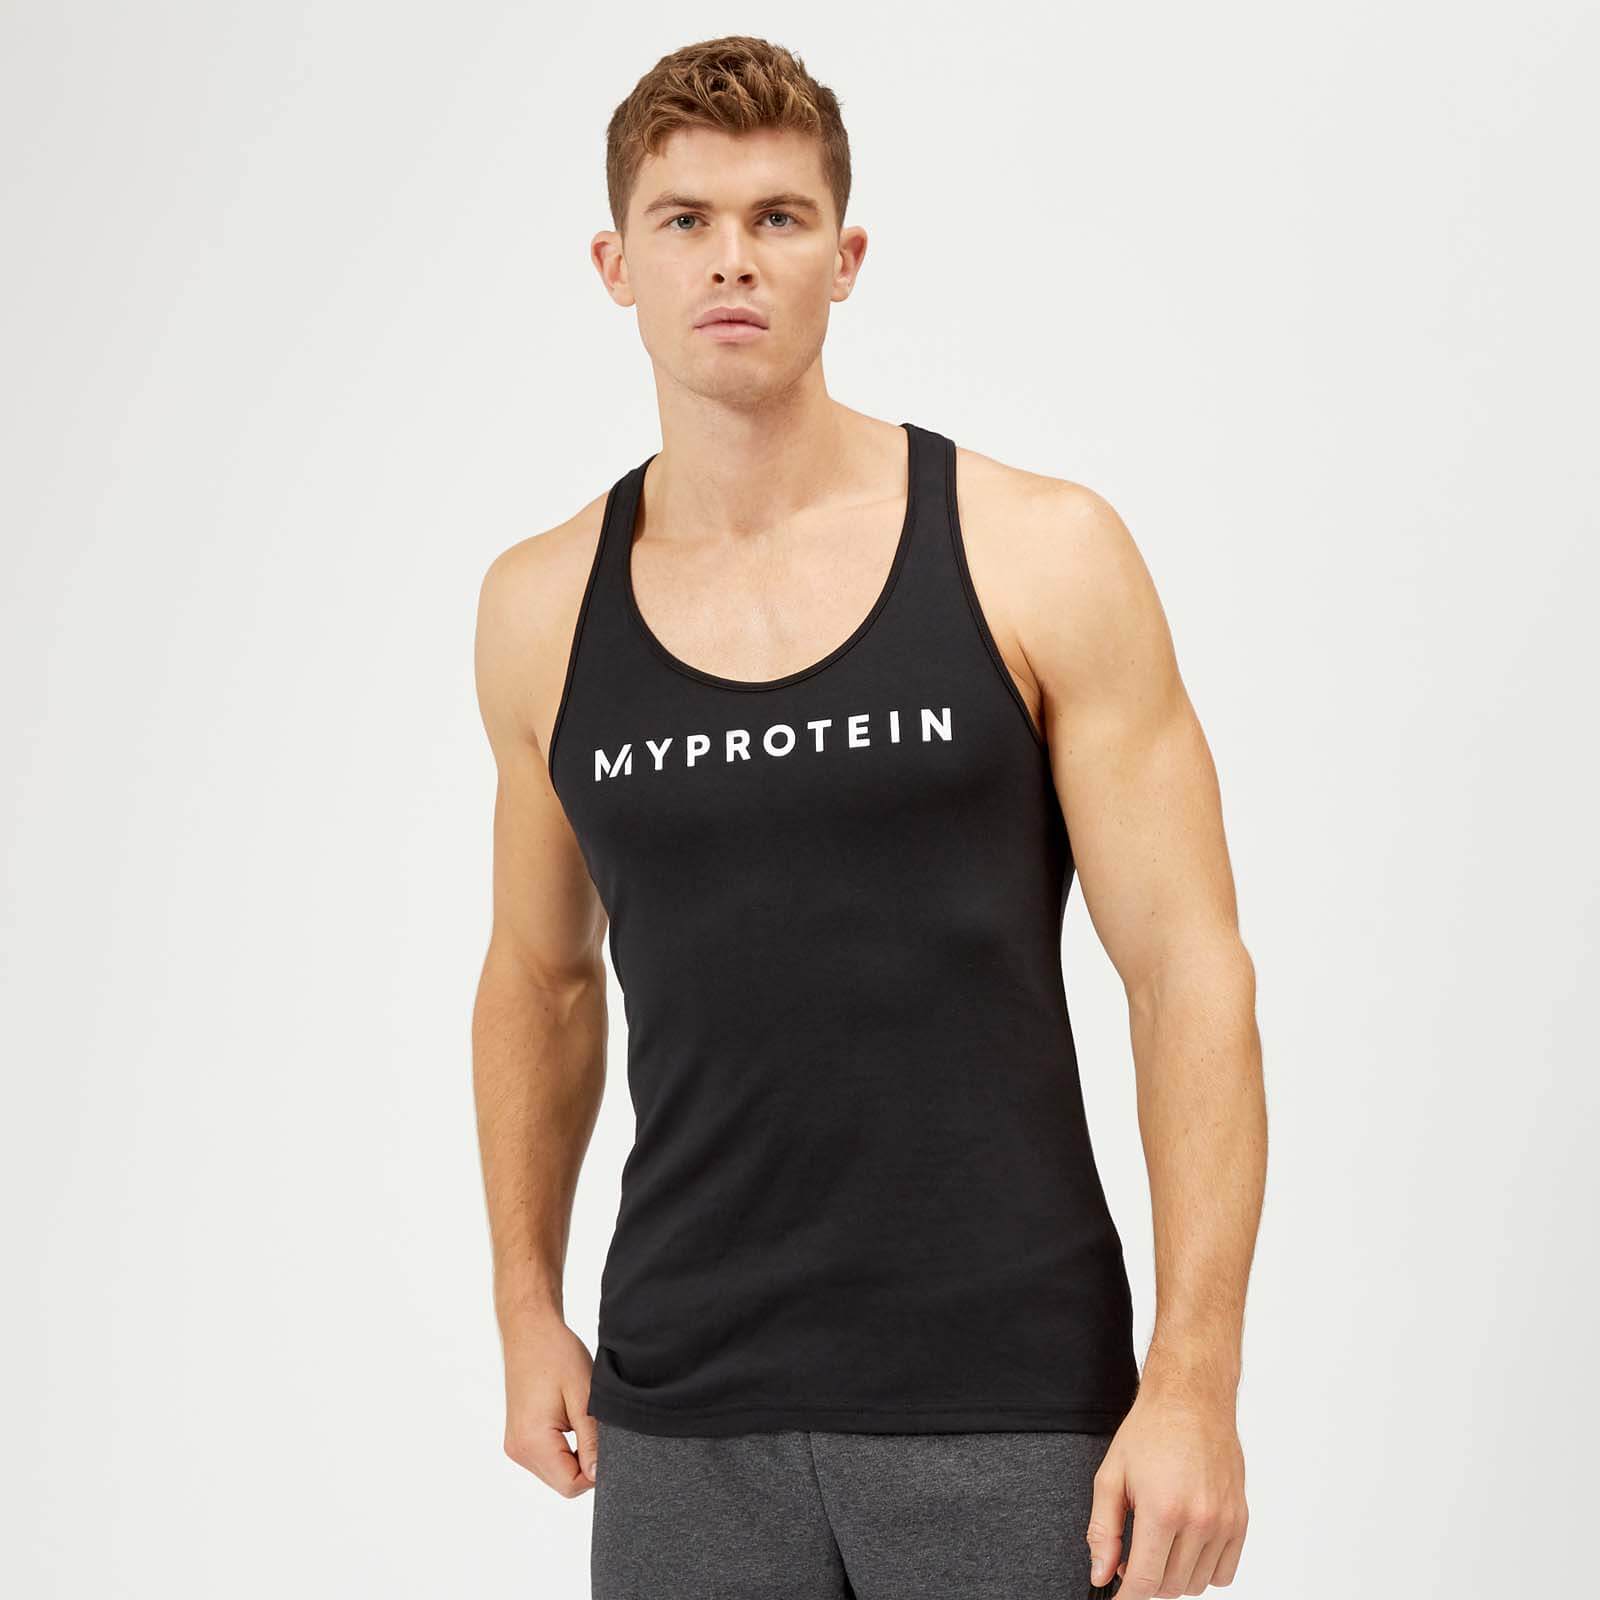 Myprotein Het original stringerhemd - M